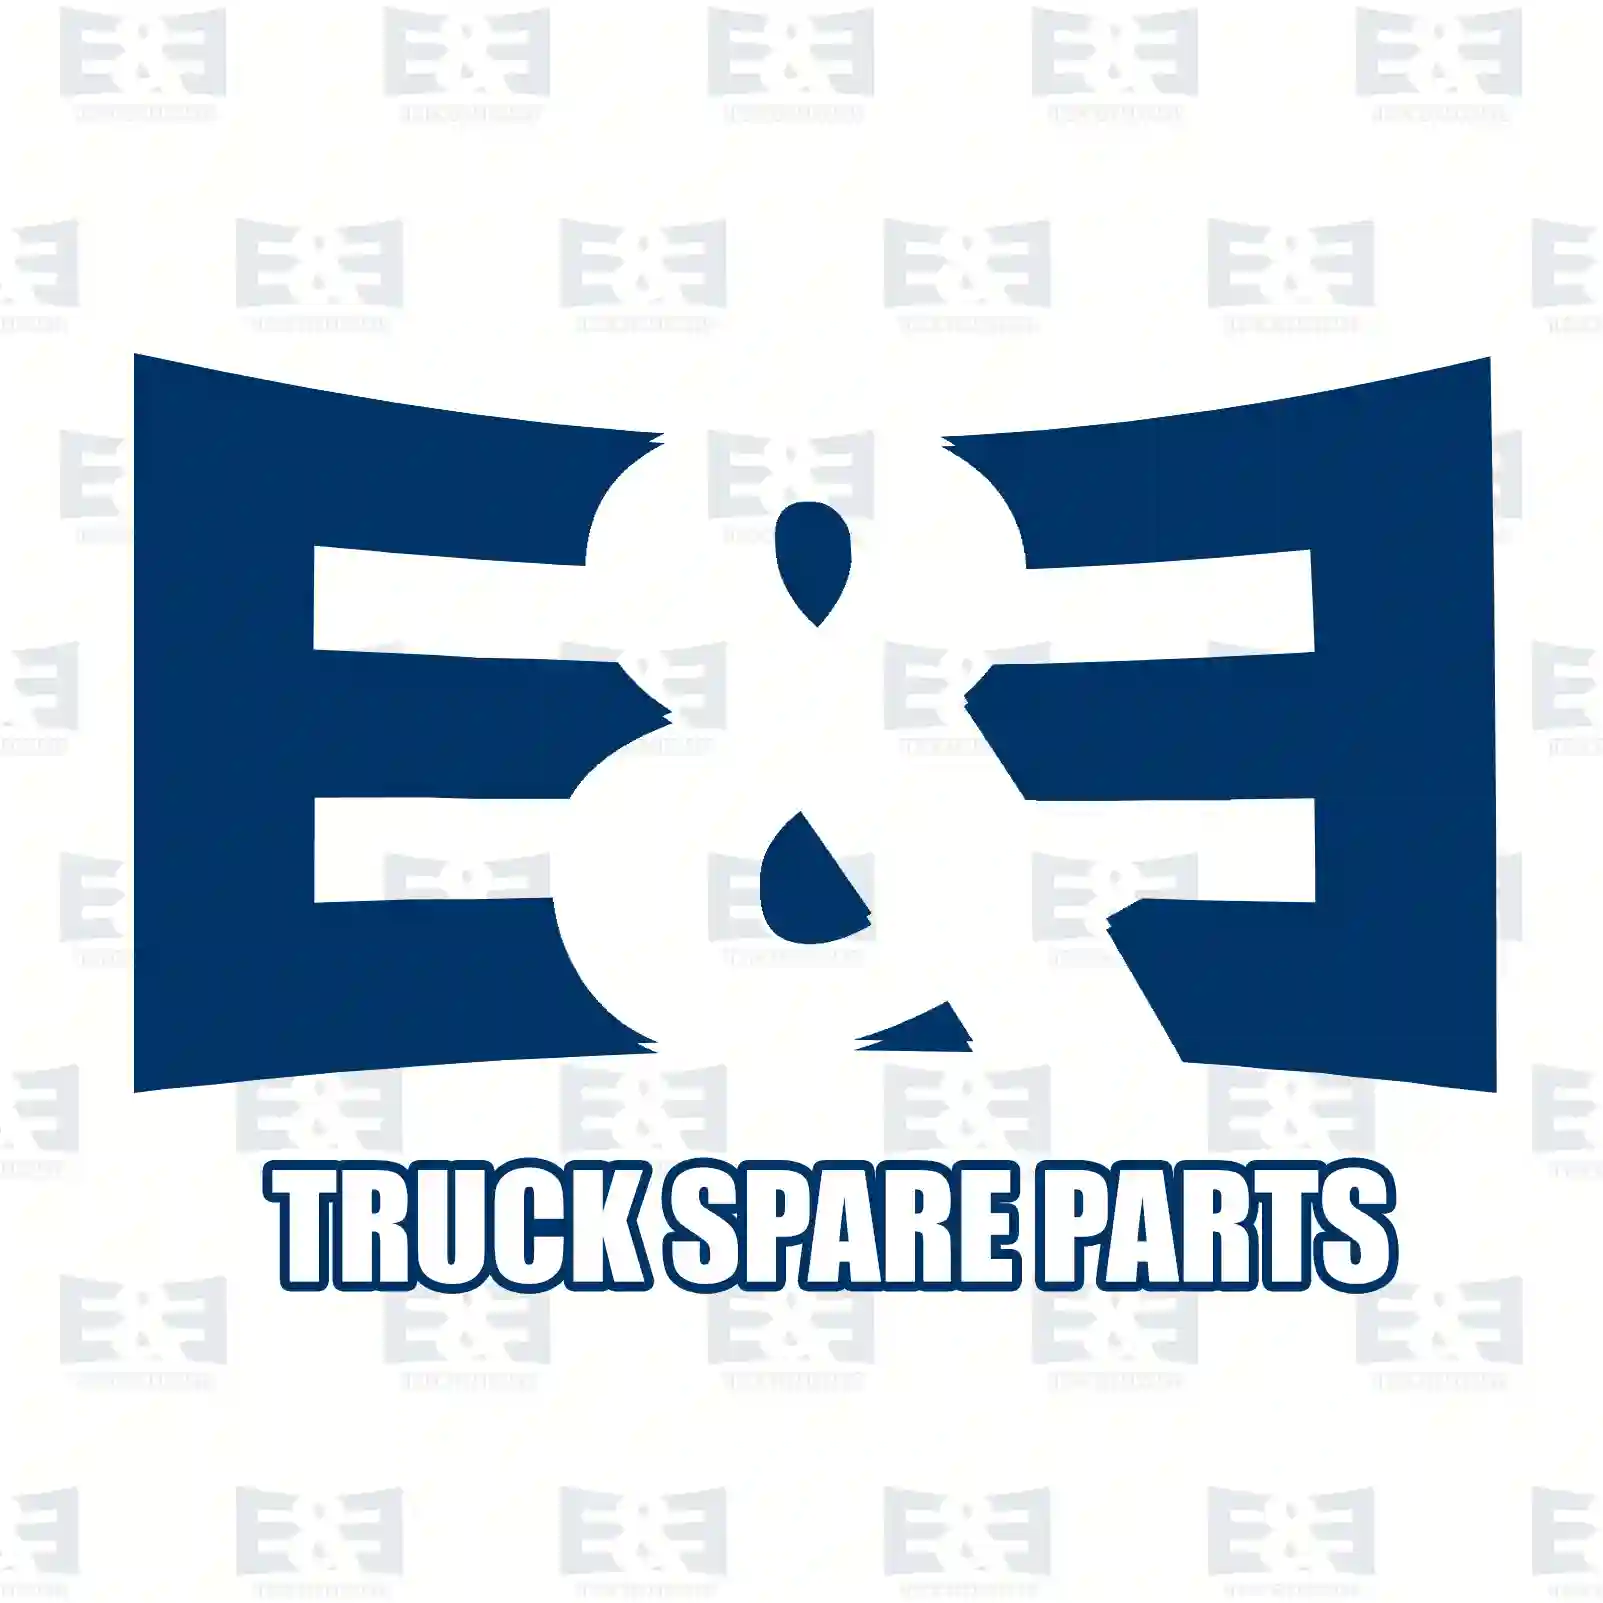 Cabin shock absorber, 2E2275406, 08140869, 504051670, 98408734, 08140869, 504051670, 504227725, 98408734, 08140869, 504051670, 98408734, ZG41196-0008 ||  2E2275406 E&E Truck Spare Parts | Truck Spare Parts, Auotomotive Spare Parts Cabin shock absorber, 2E2275406, 08140869, 504051670, 98408734, 08140869, 504051670, 504227725, 98408734, 08140869, 504051670, 98408734, ZG41196-0008 ||  2E2275406 E&E Truck Spare Parts | Truck Spare Parts, Auotomotive Spare Parts